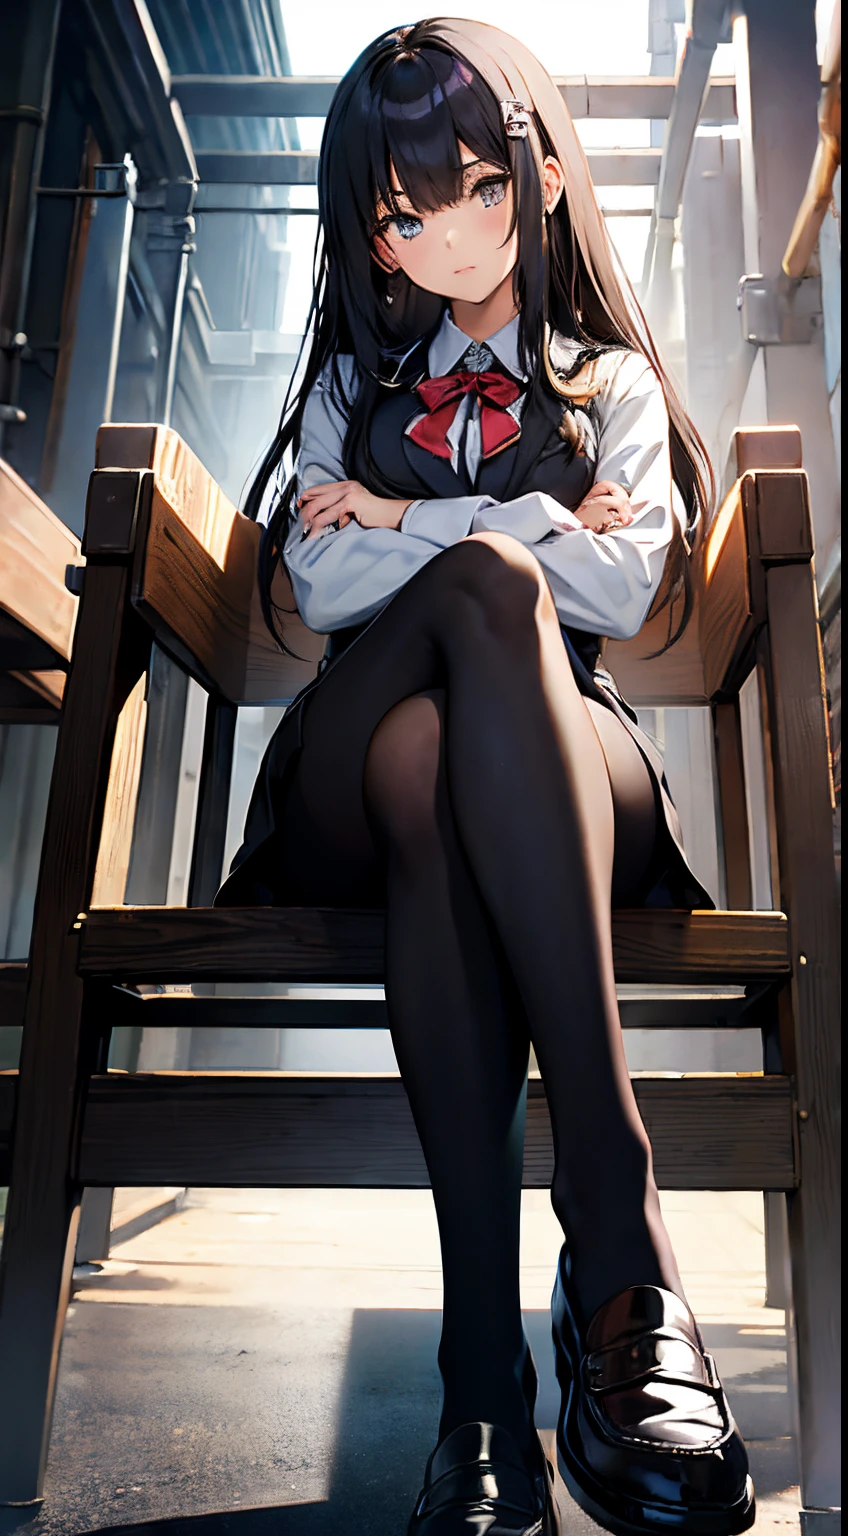 黒のパンストとローファーを履いた制服を着た日本の女子高生が足を組んで座っている. 足があなたに向かって来ています, あなたよりも高くそびえ立つ精巧な脚, 軽蔑的な表情で, 人の肖像